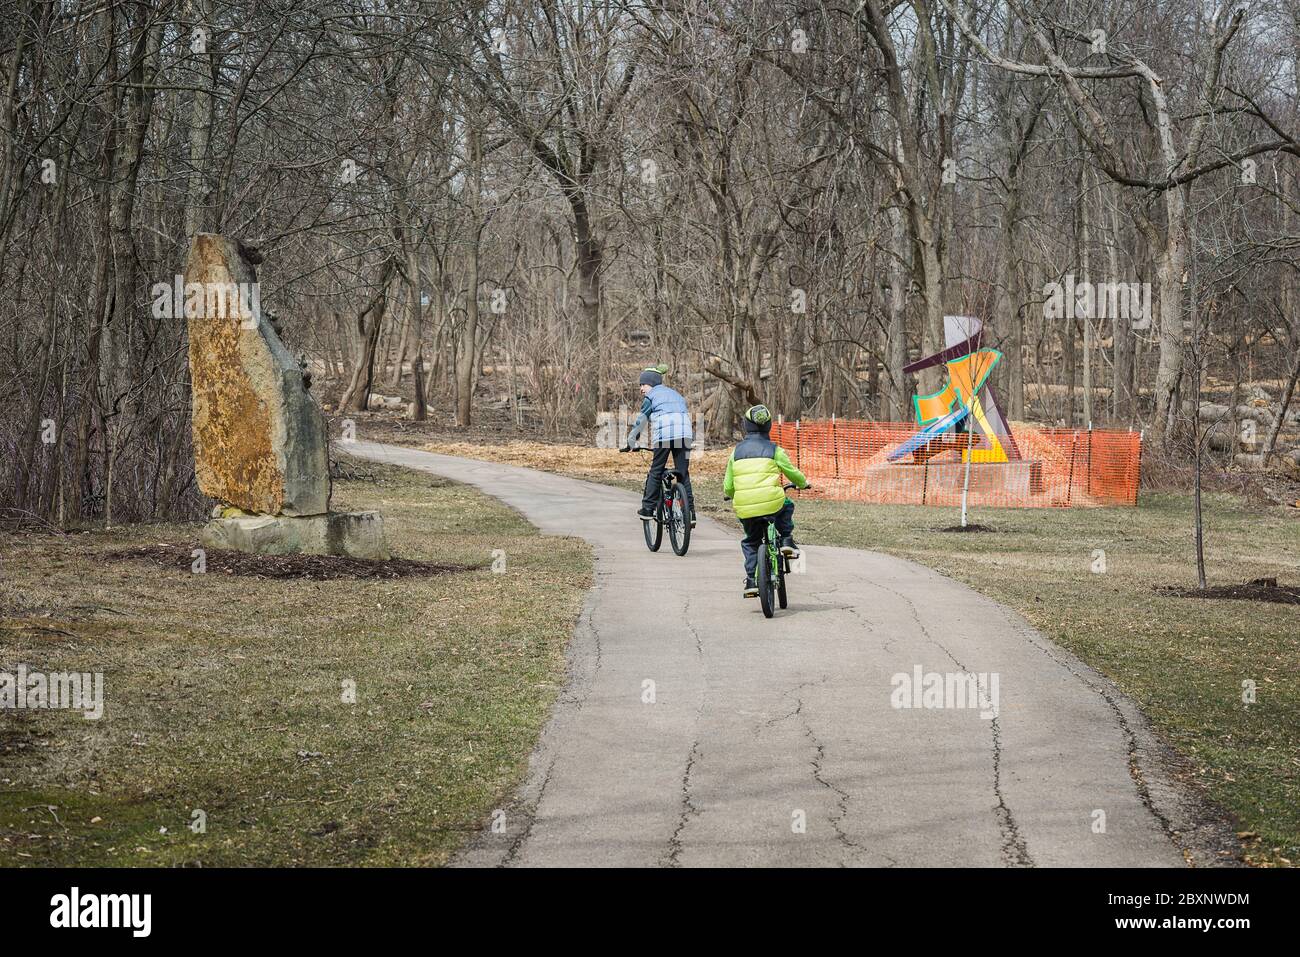 Schaumburg, Illinois États-Unis - 28 mars 2018 - The Chicago Athenaeum, International Sculpture Park, deux garçons à vélo (pour usage éditorial uniquement) Banque D'Images